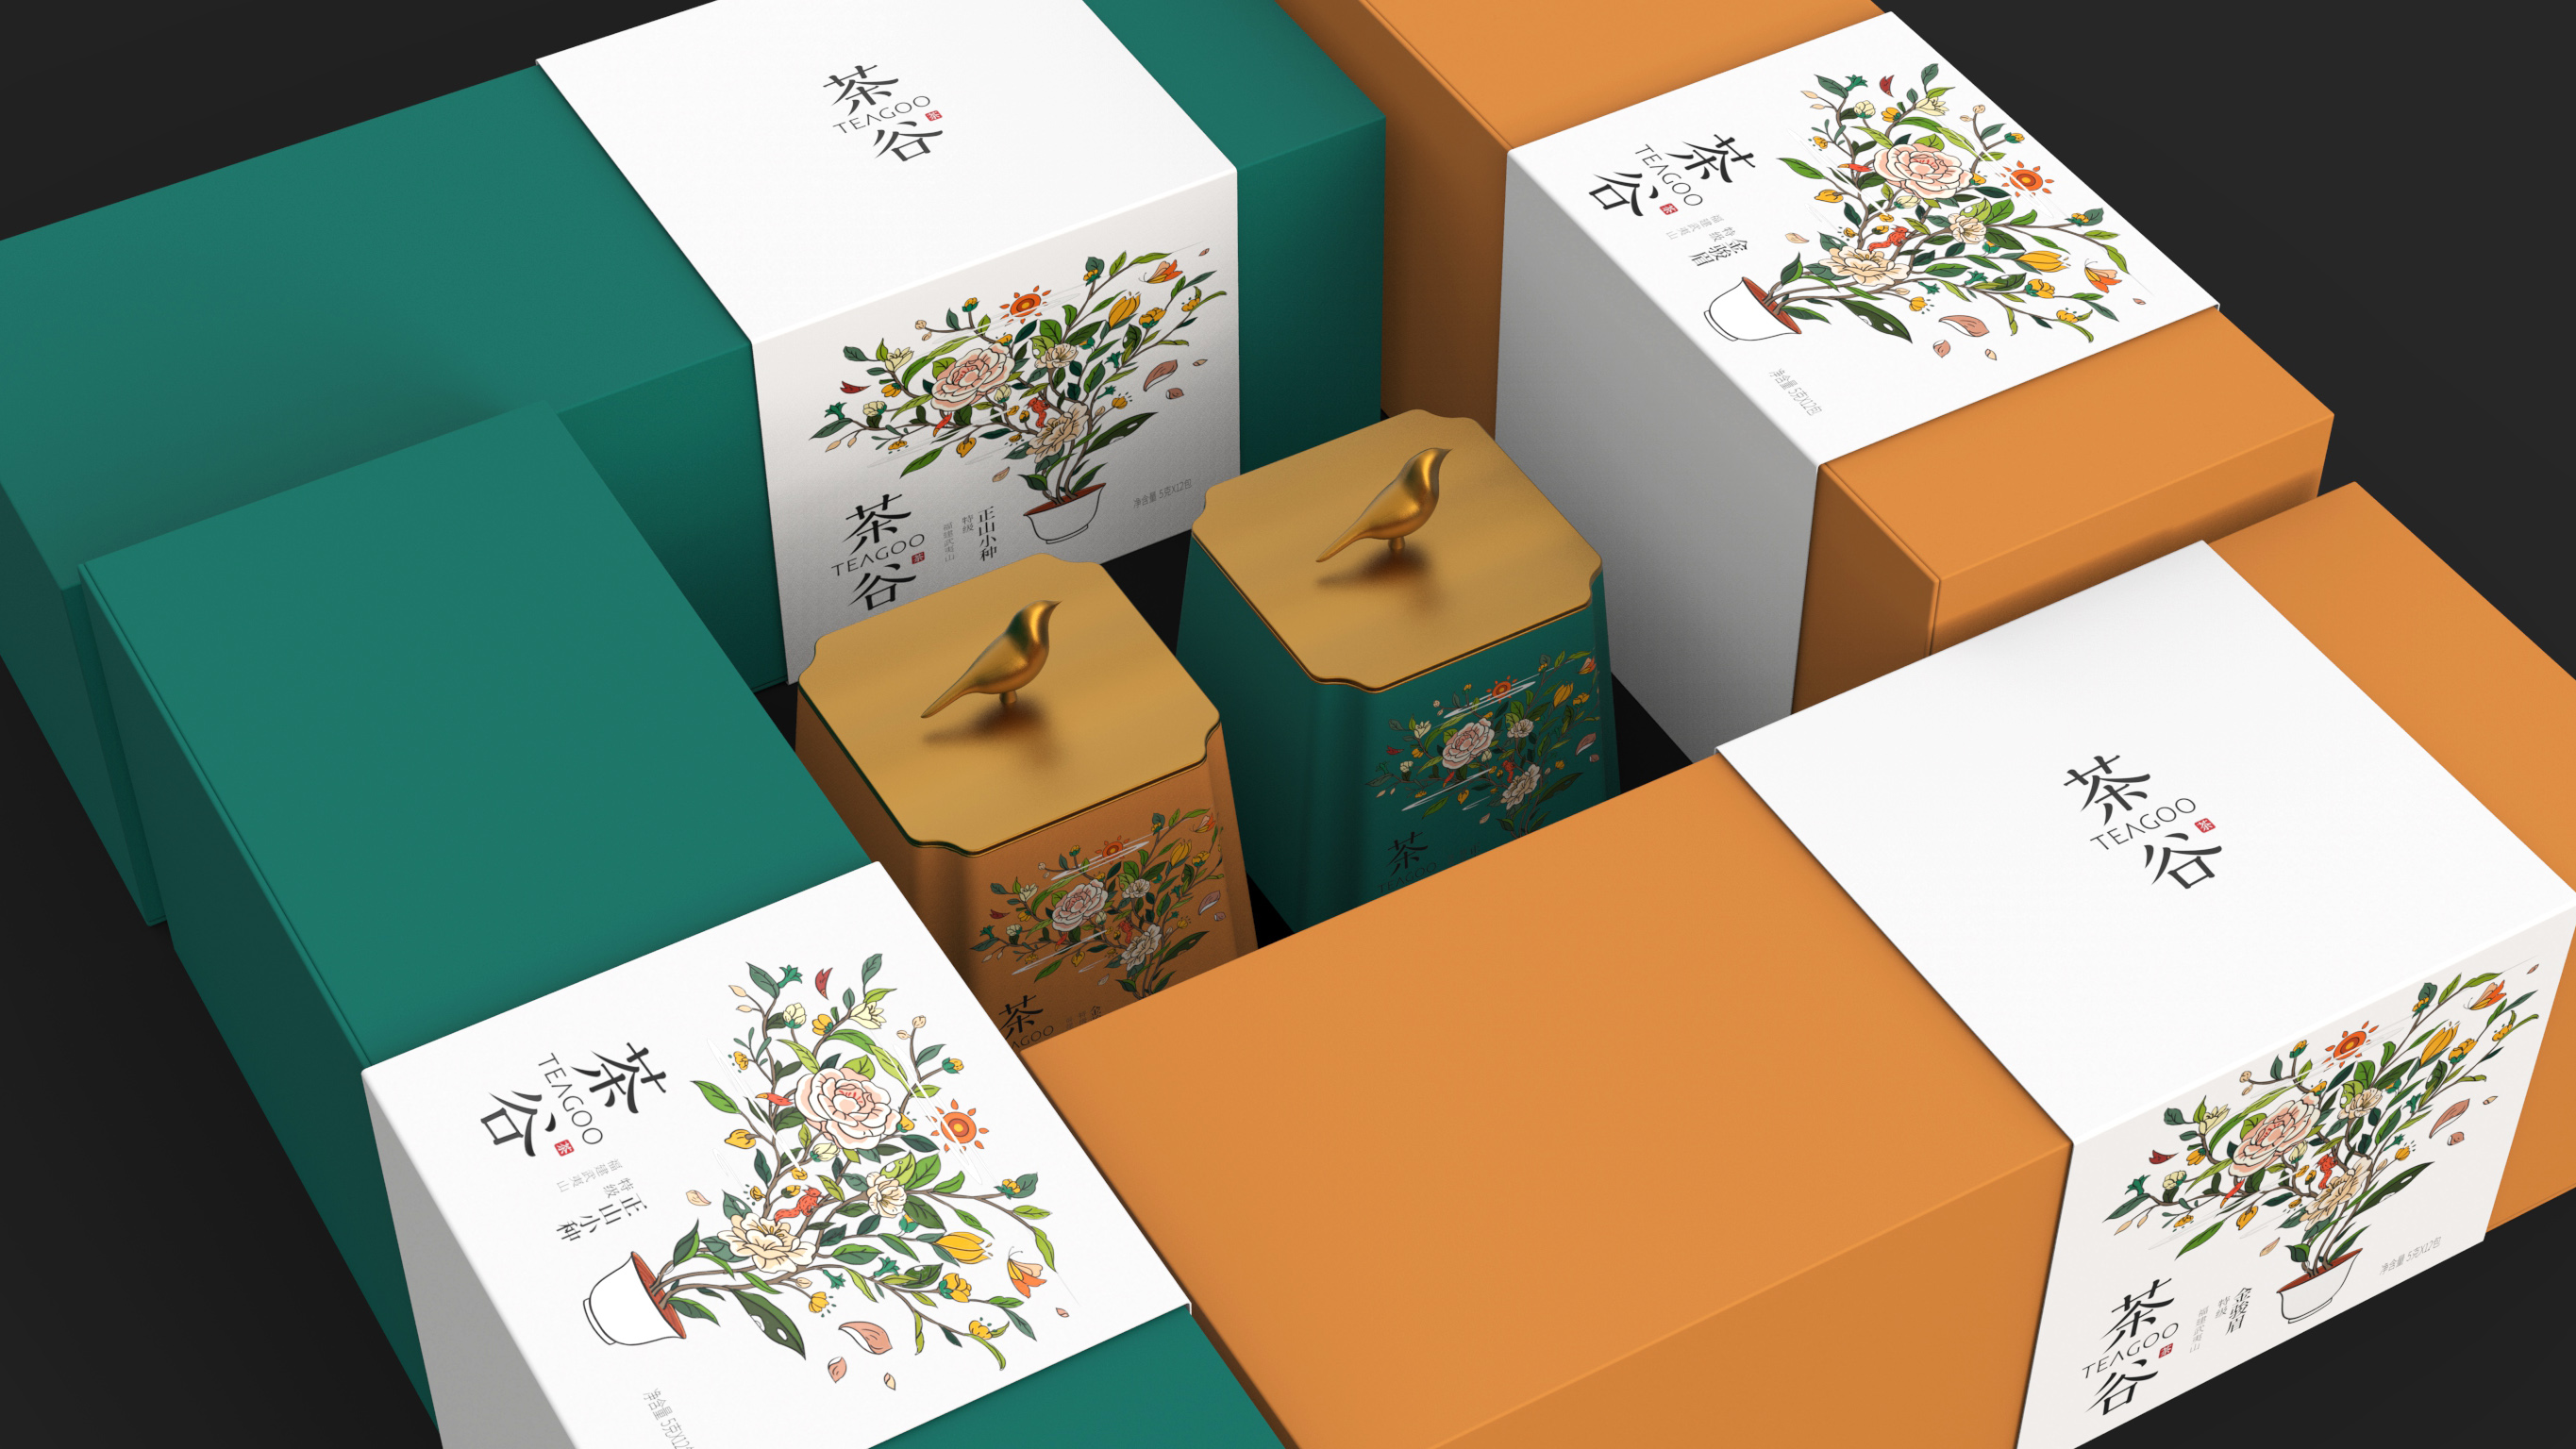 茶谷 TEAGOO｜茶品牌包装设计